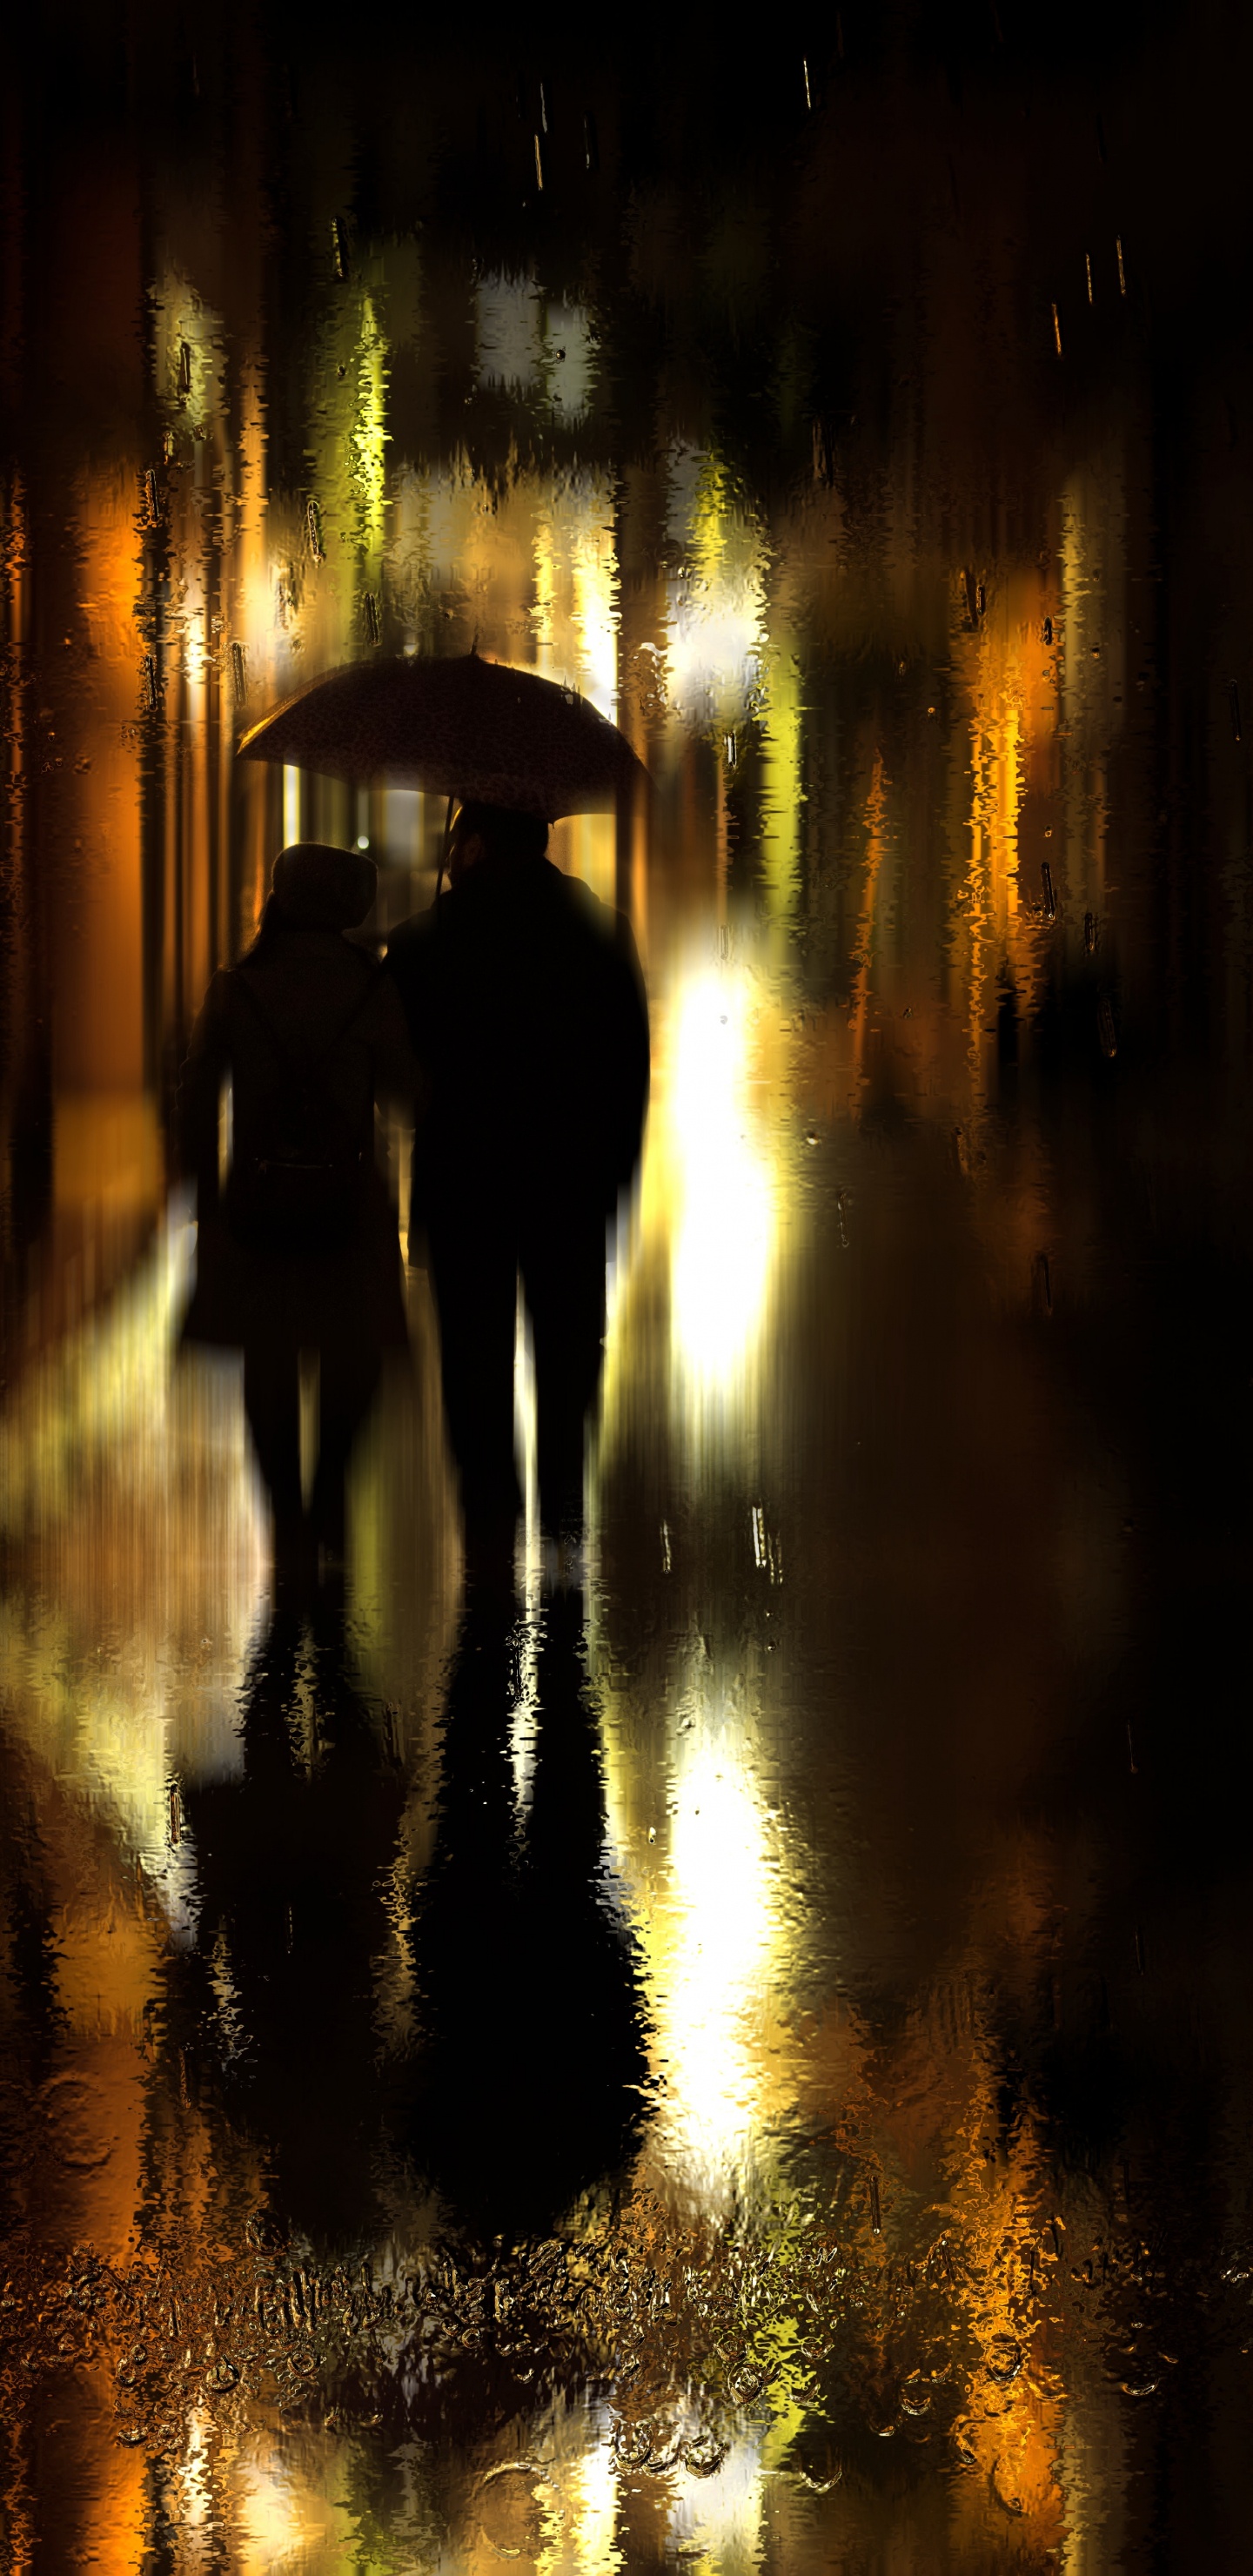 Regen, Reflexion, Nacht, Licht, Abend. Wallpaper in 1440x2960 Resolution